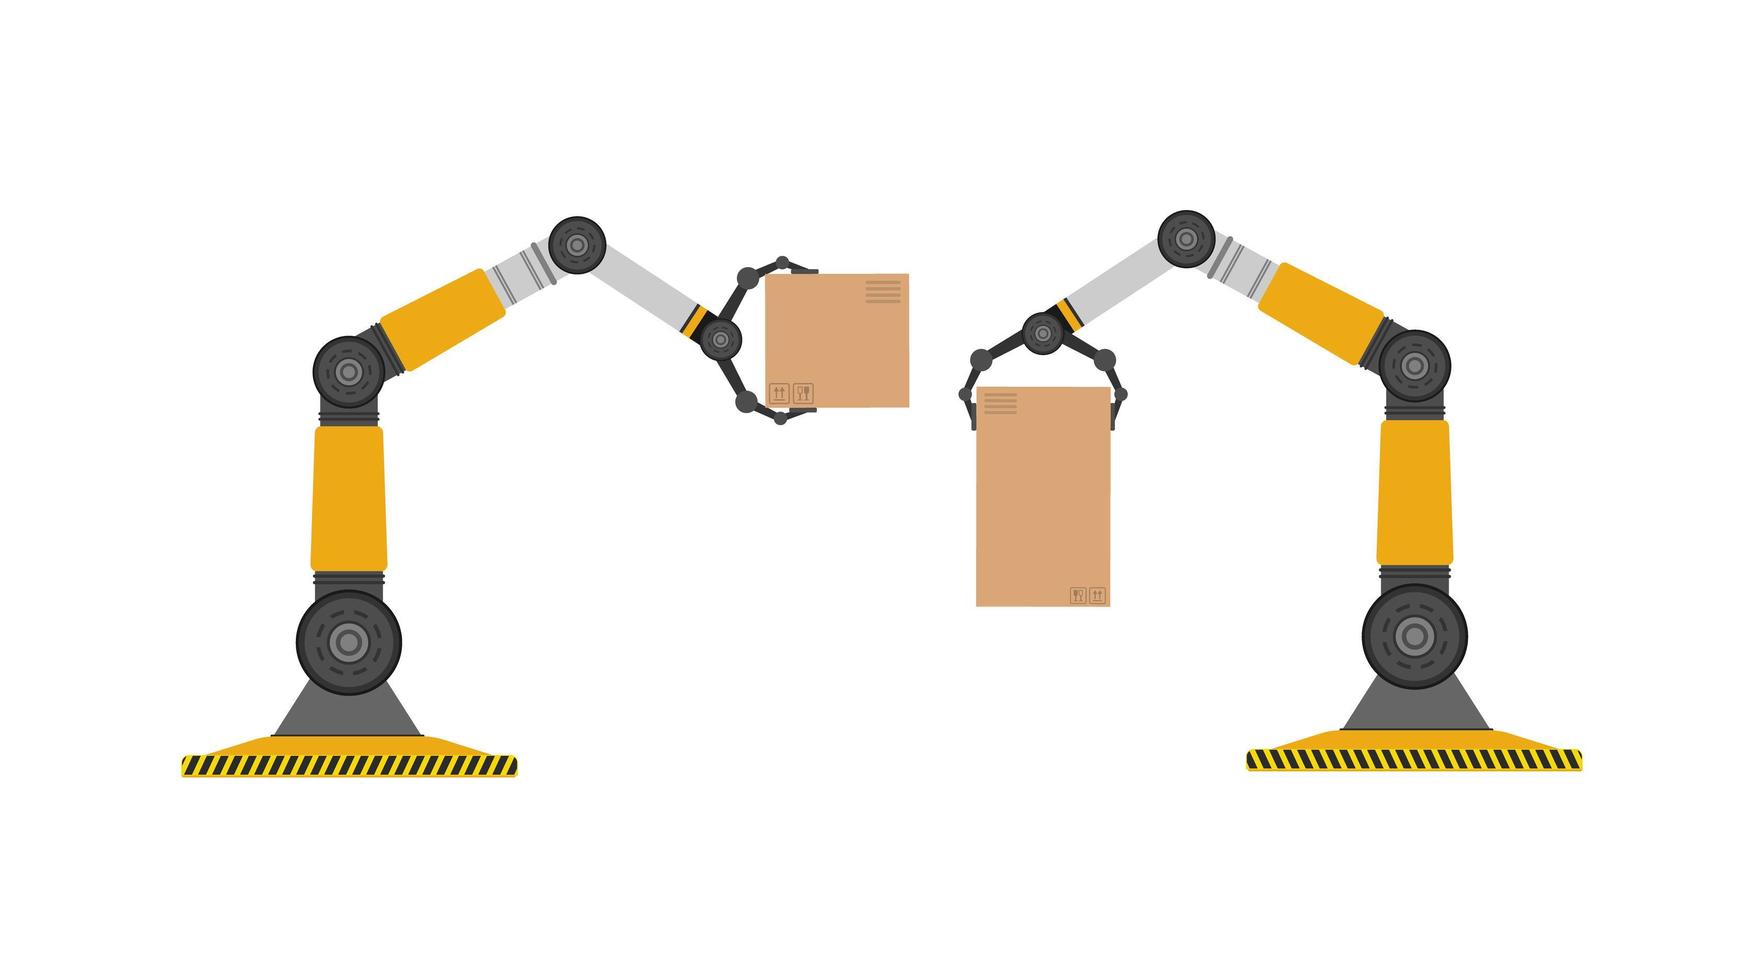 un robot mecánico sostiene una caja. brazo robótico industrial levanta una carga. tecnología industrial moderna. electrodomésticos para empresas manufactureras. aislado. vector. vector